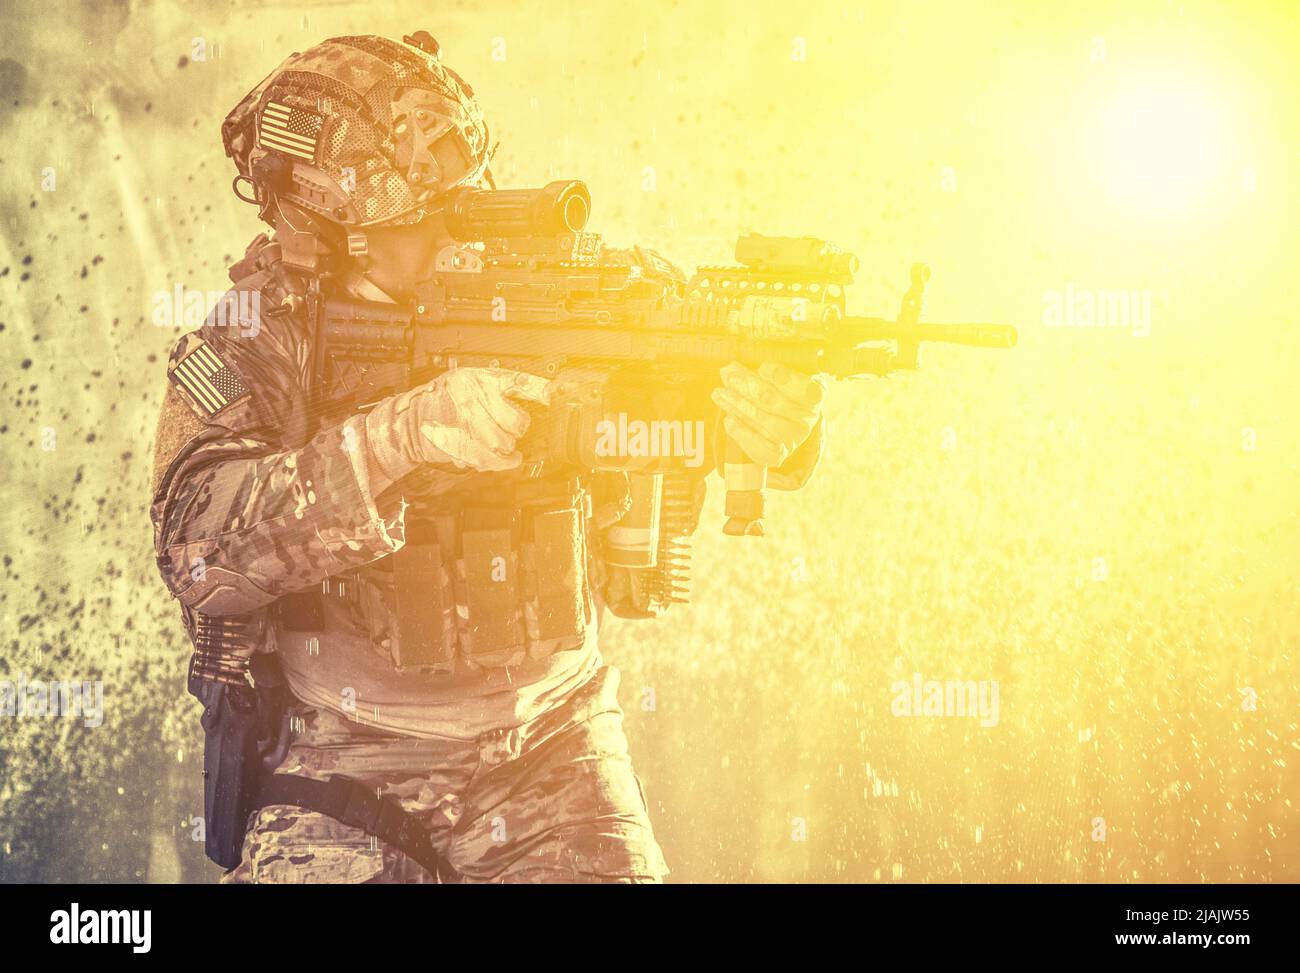 U.S. Marine firing light machine gun. Stock Photo